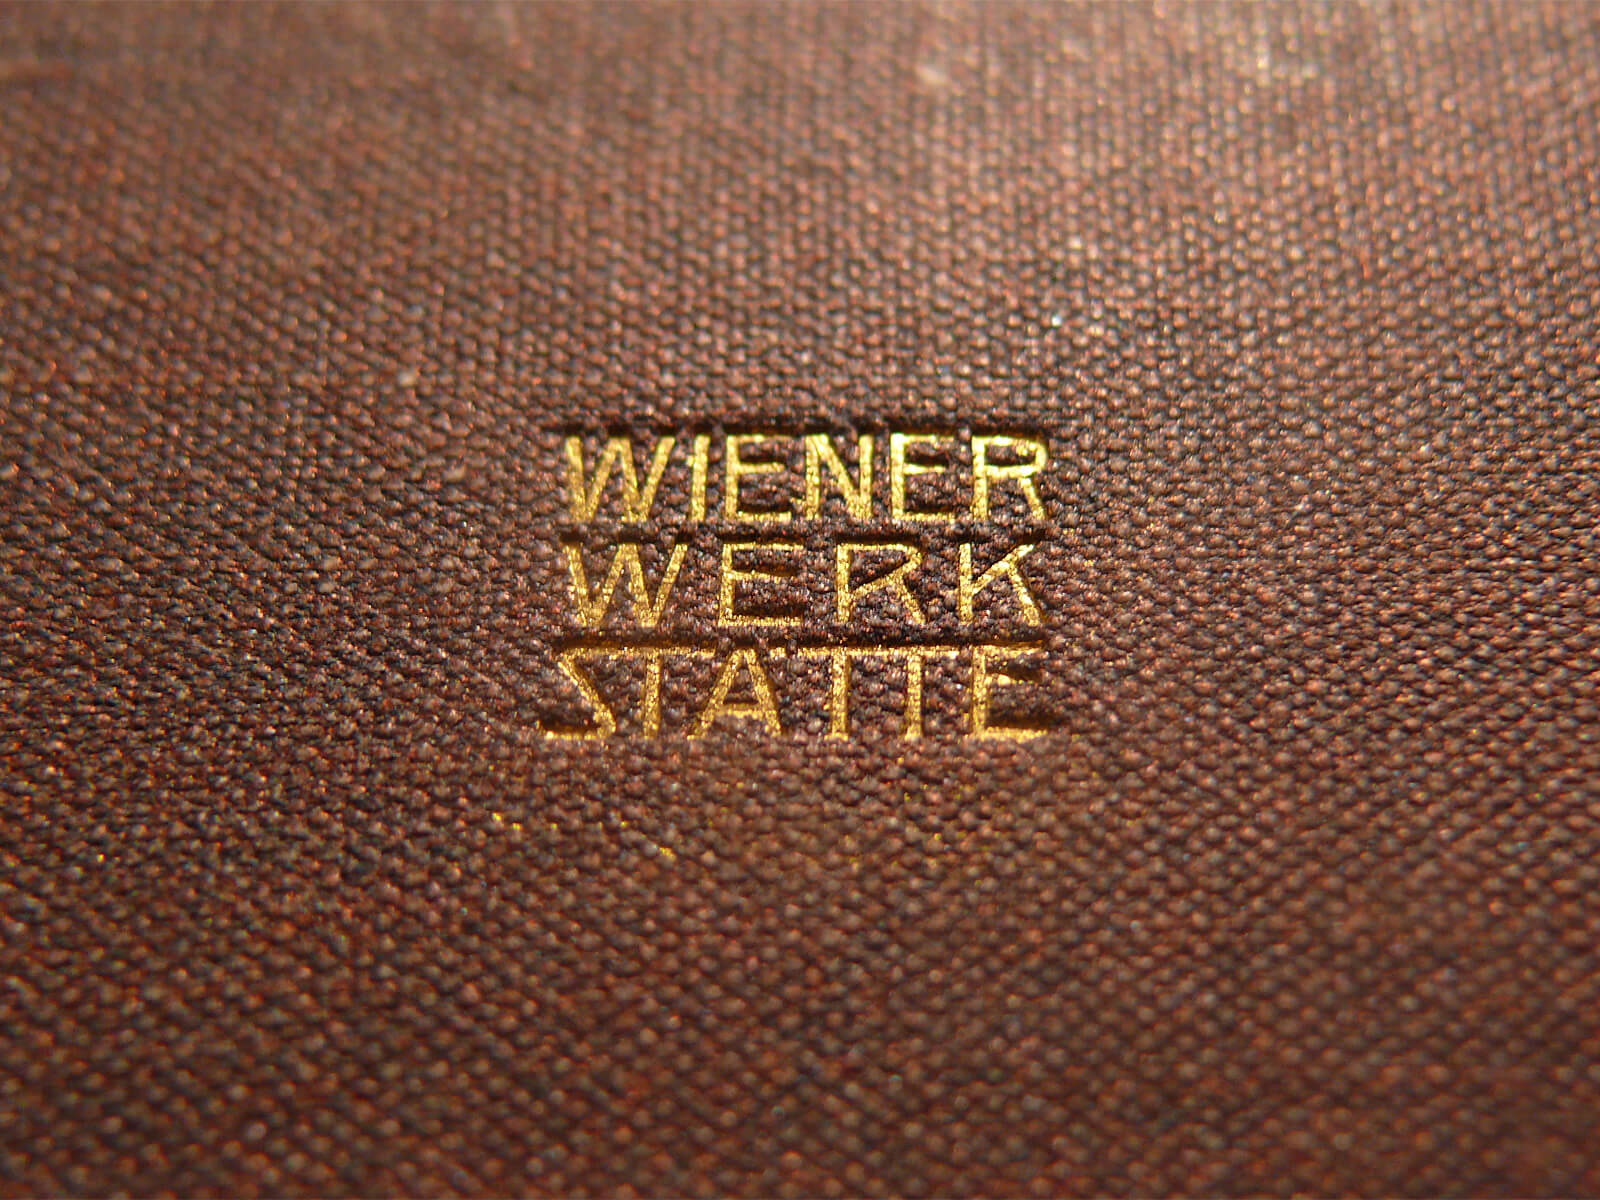 Hyperion: Das Signet der Wiener Werkstätte auf dem Rückendeckel